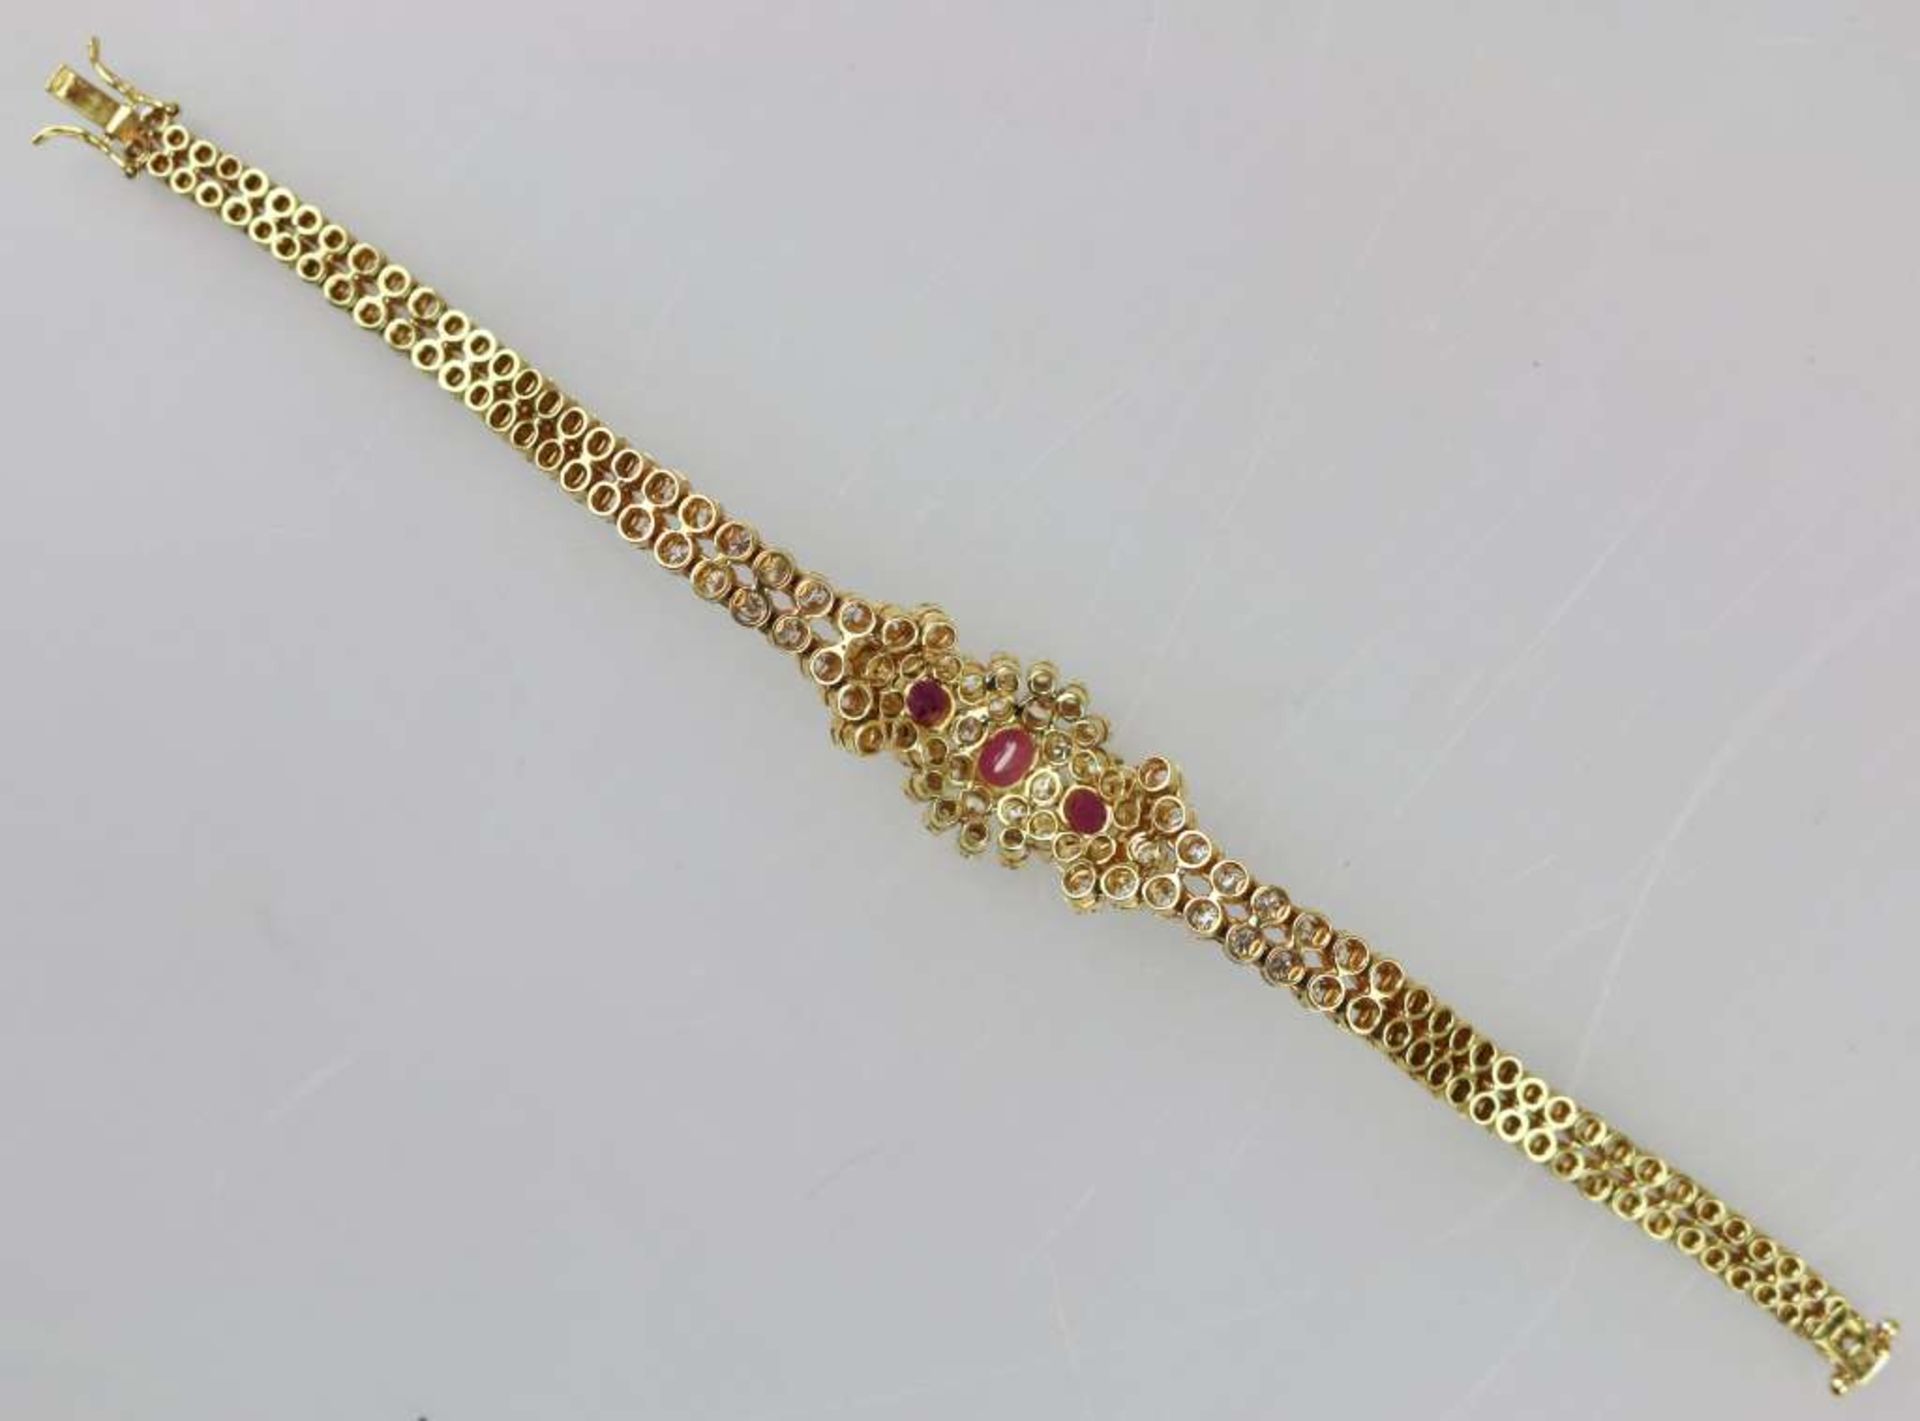 Rubin-Brillant-Armband, 585er Gold, zweireihig bewegliches Gliederarmband besetzt mit Brillanten, - Bild 3 aus 3